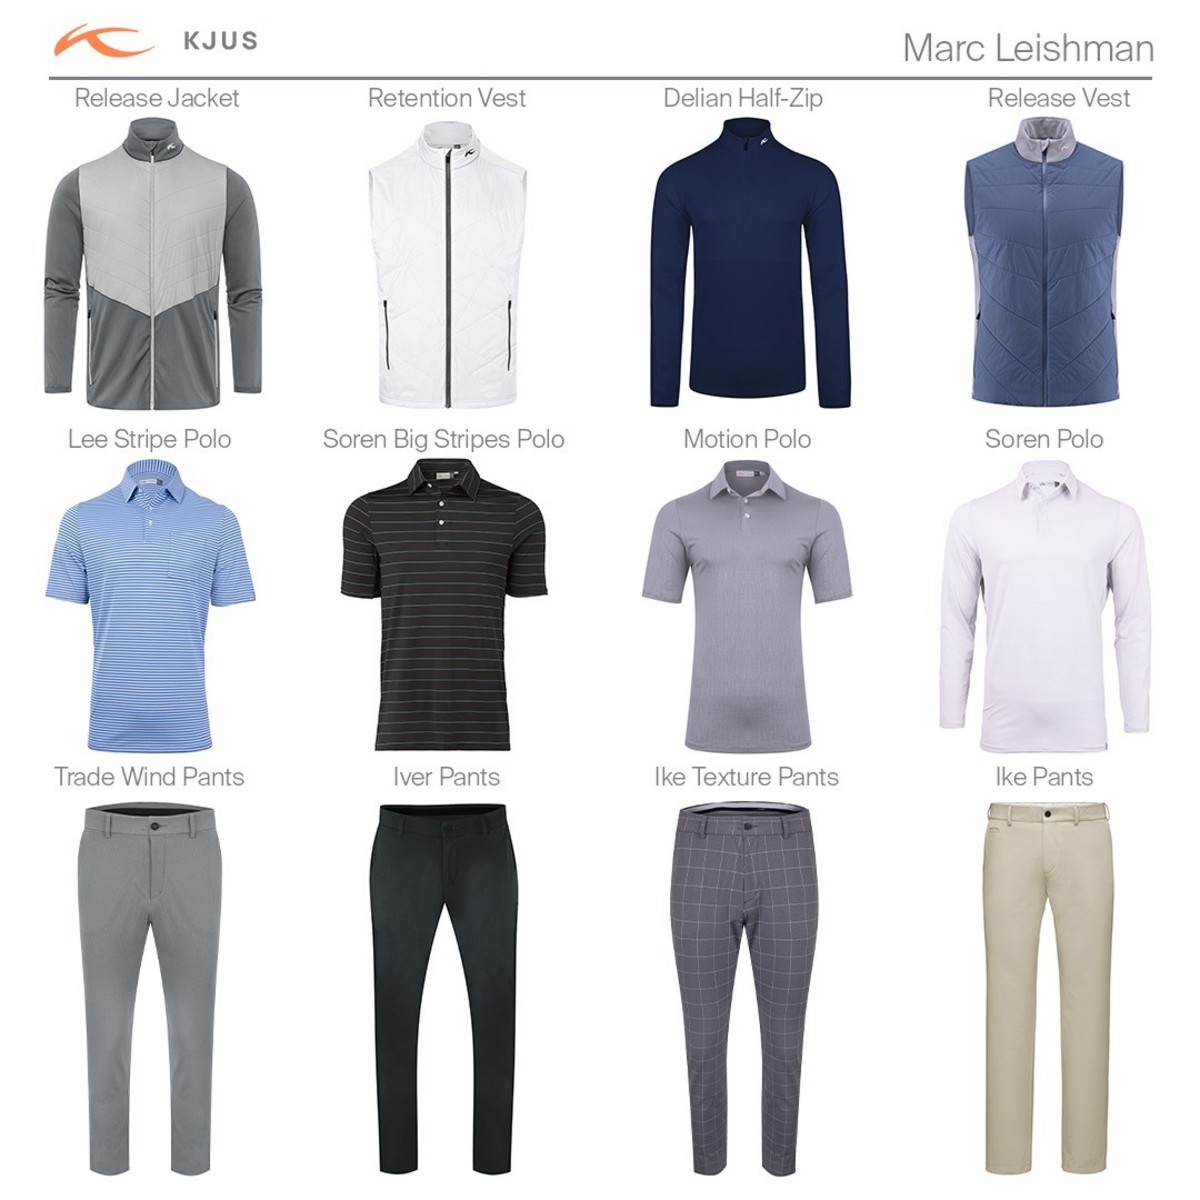 KJUS-Athlete-Outfits Marc Leishman